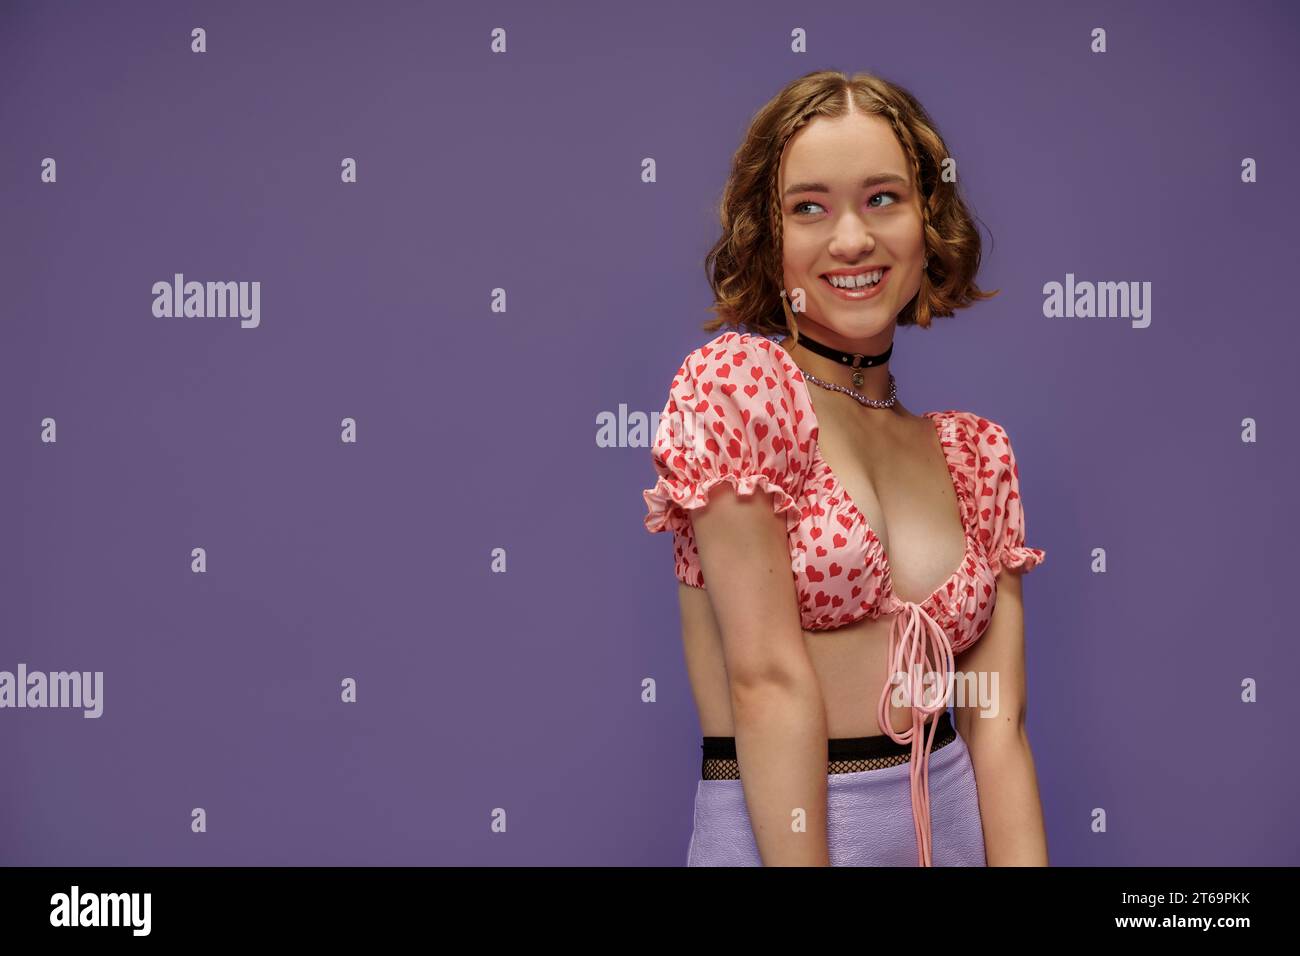 giovane donna felice in cima corta con cuori sorridenti su sfondo viola, emozione positiva Foto Stock